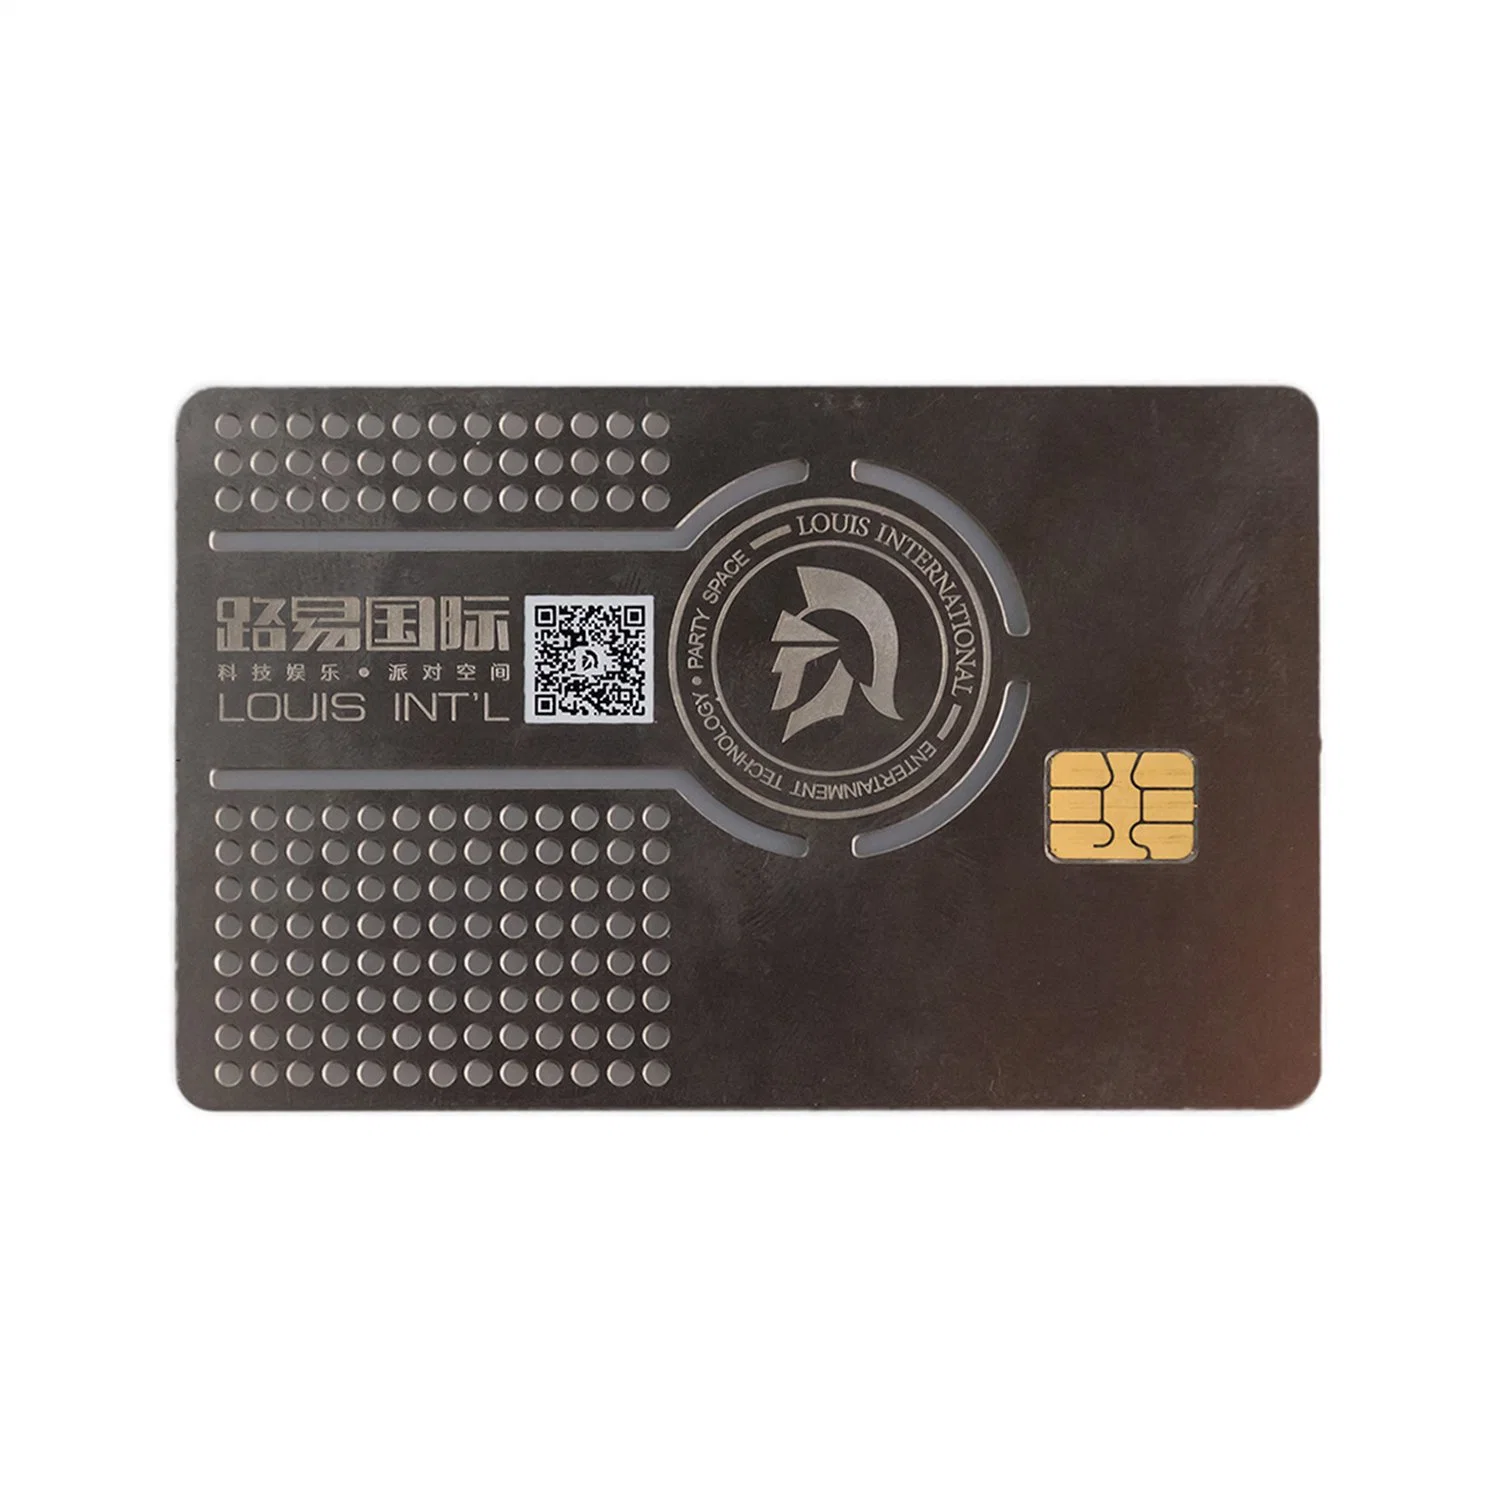 NFC Business Card Metal NFC Card 215 Silver NFC Contact Card Metal